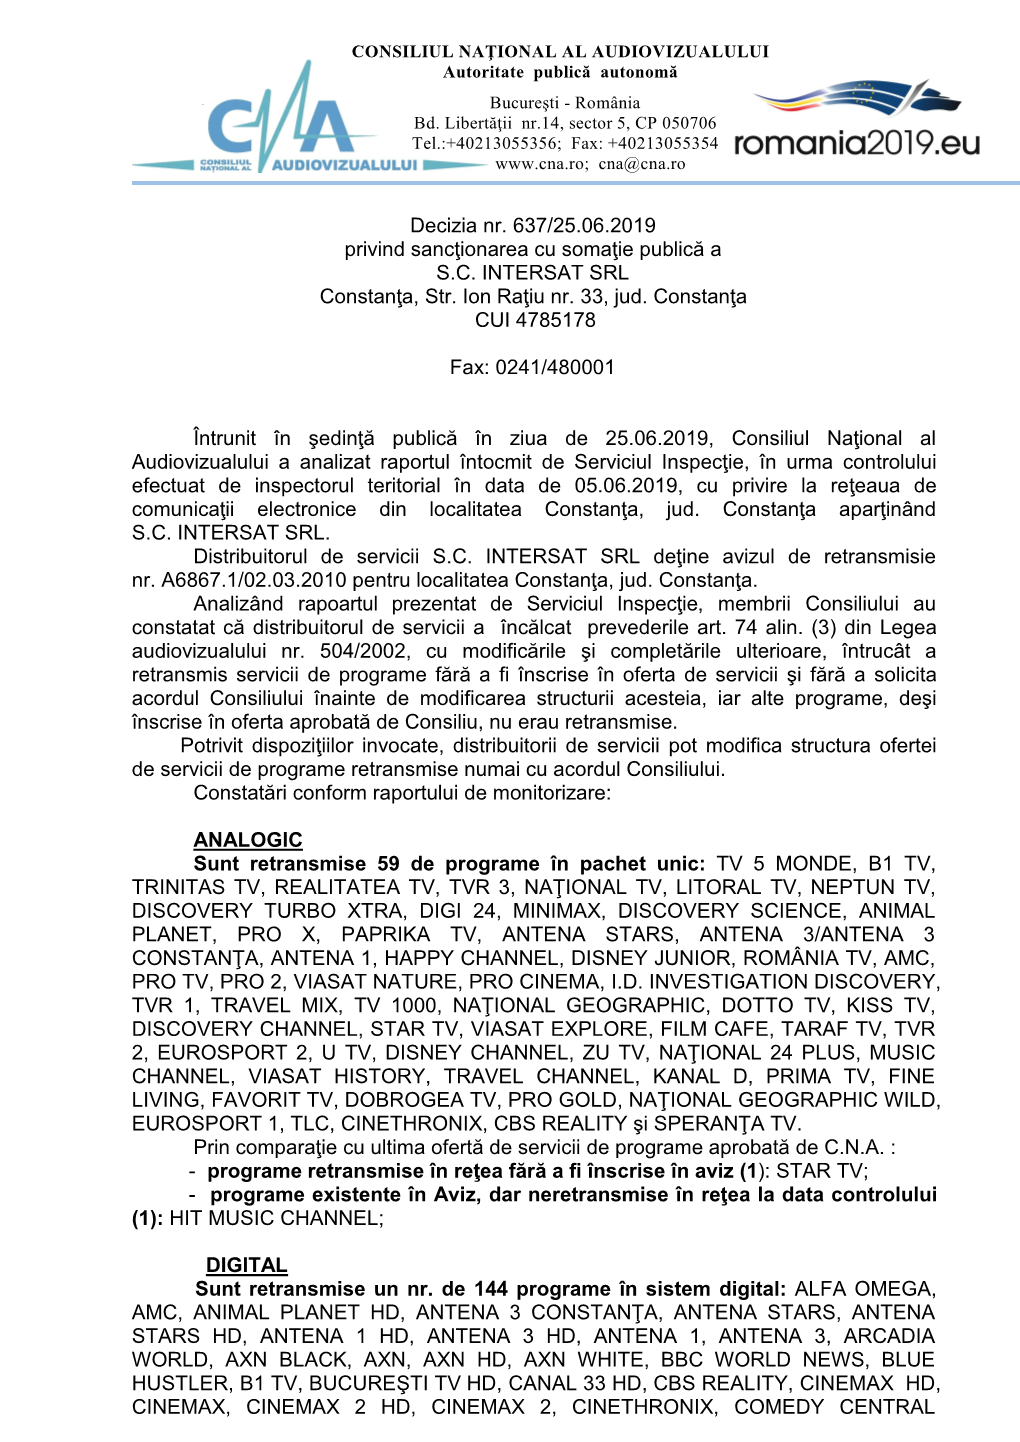 Decizia Nr. 637/25.06.2019 Privind Sancţionarea Cu Somaţie Publică a S.C